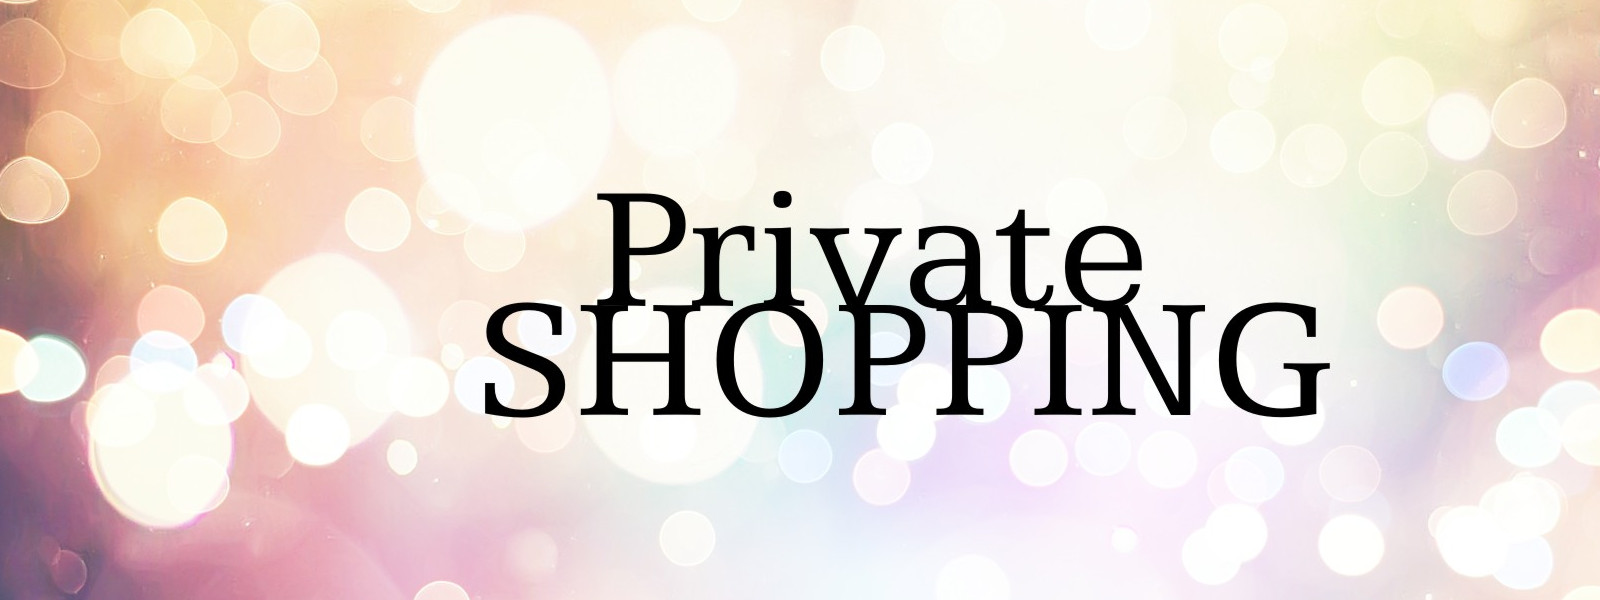 Private shopping - afspraak plannen